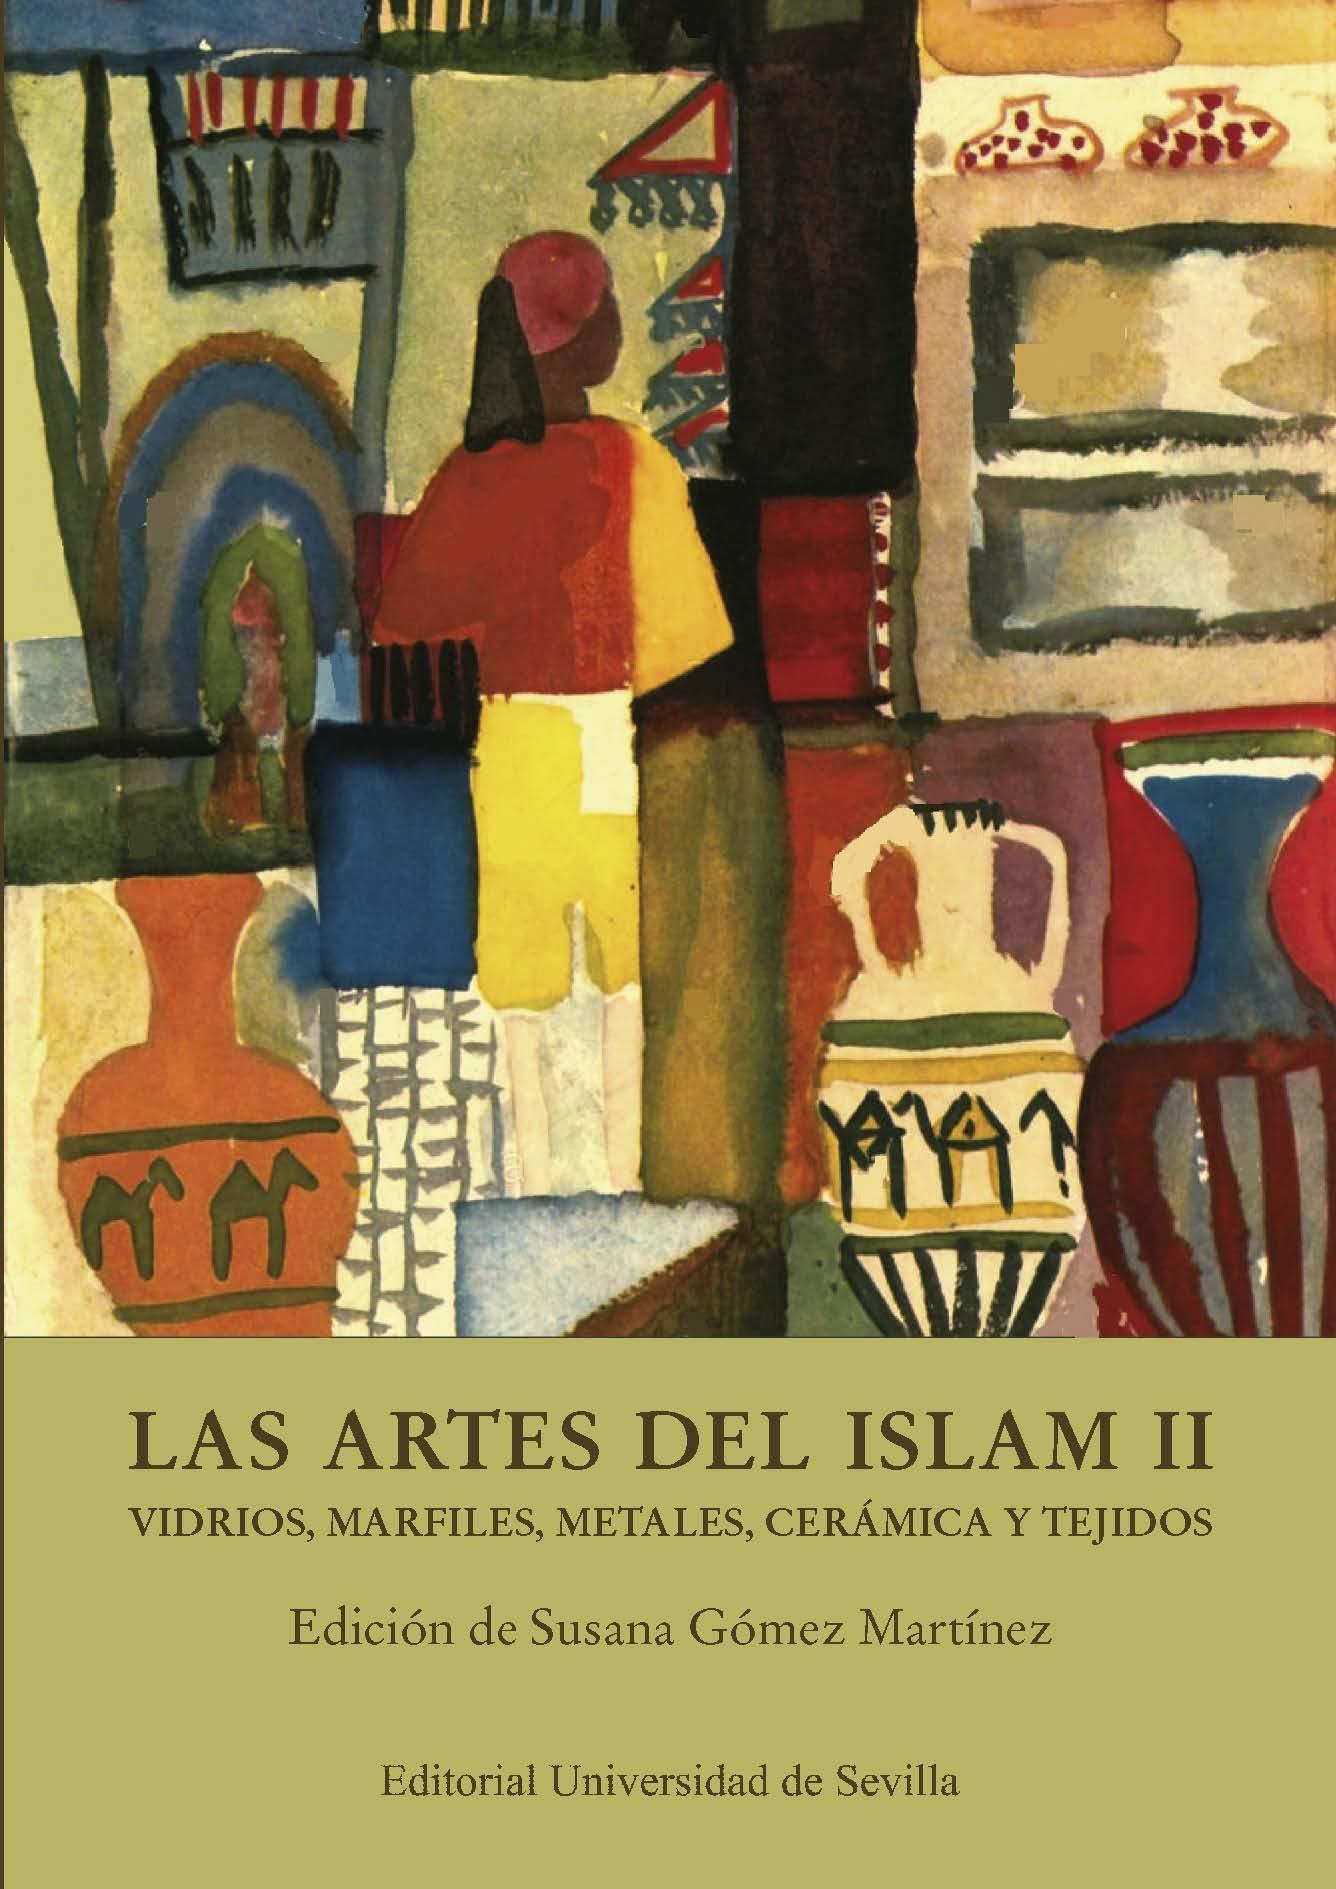 LAS ARTES DEL ISLAM II "VIDRIOS, MARFILES, METALES, CERÁMICA Y TEJIDOS"